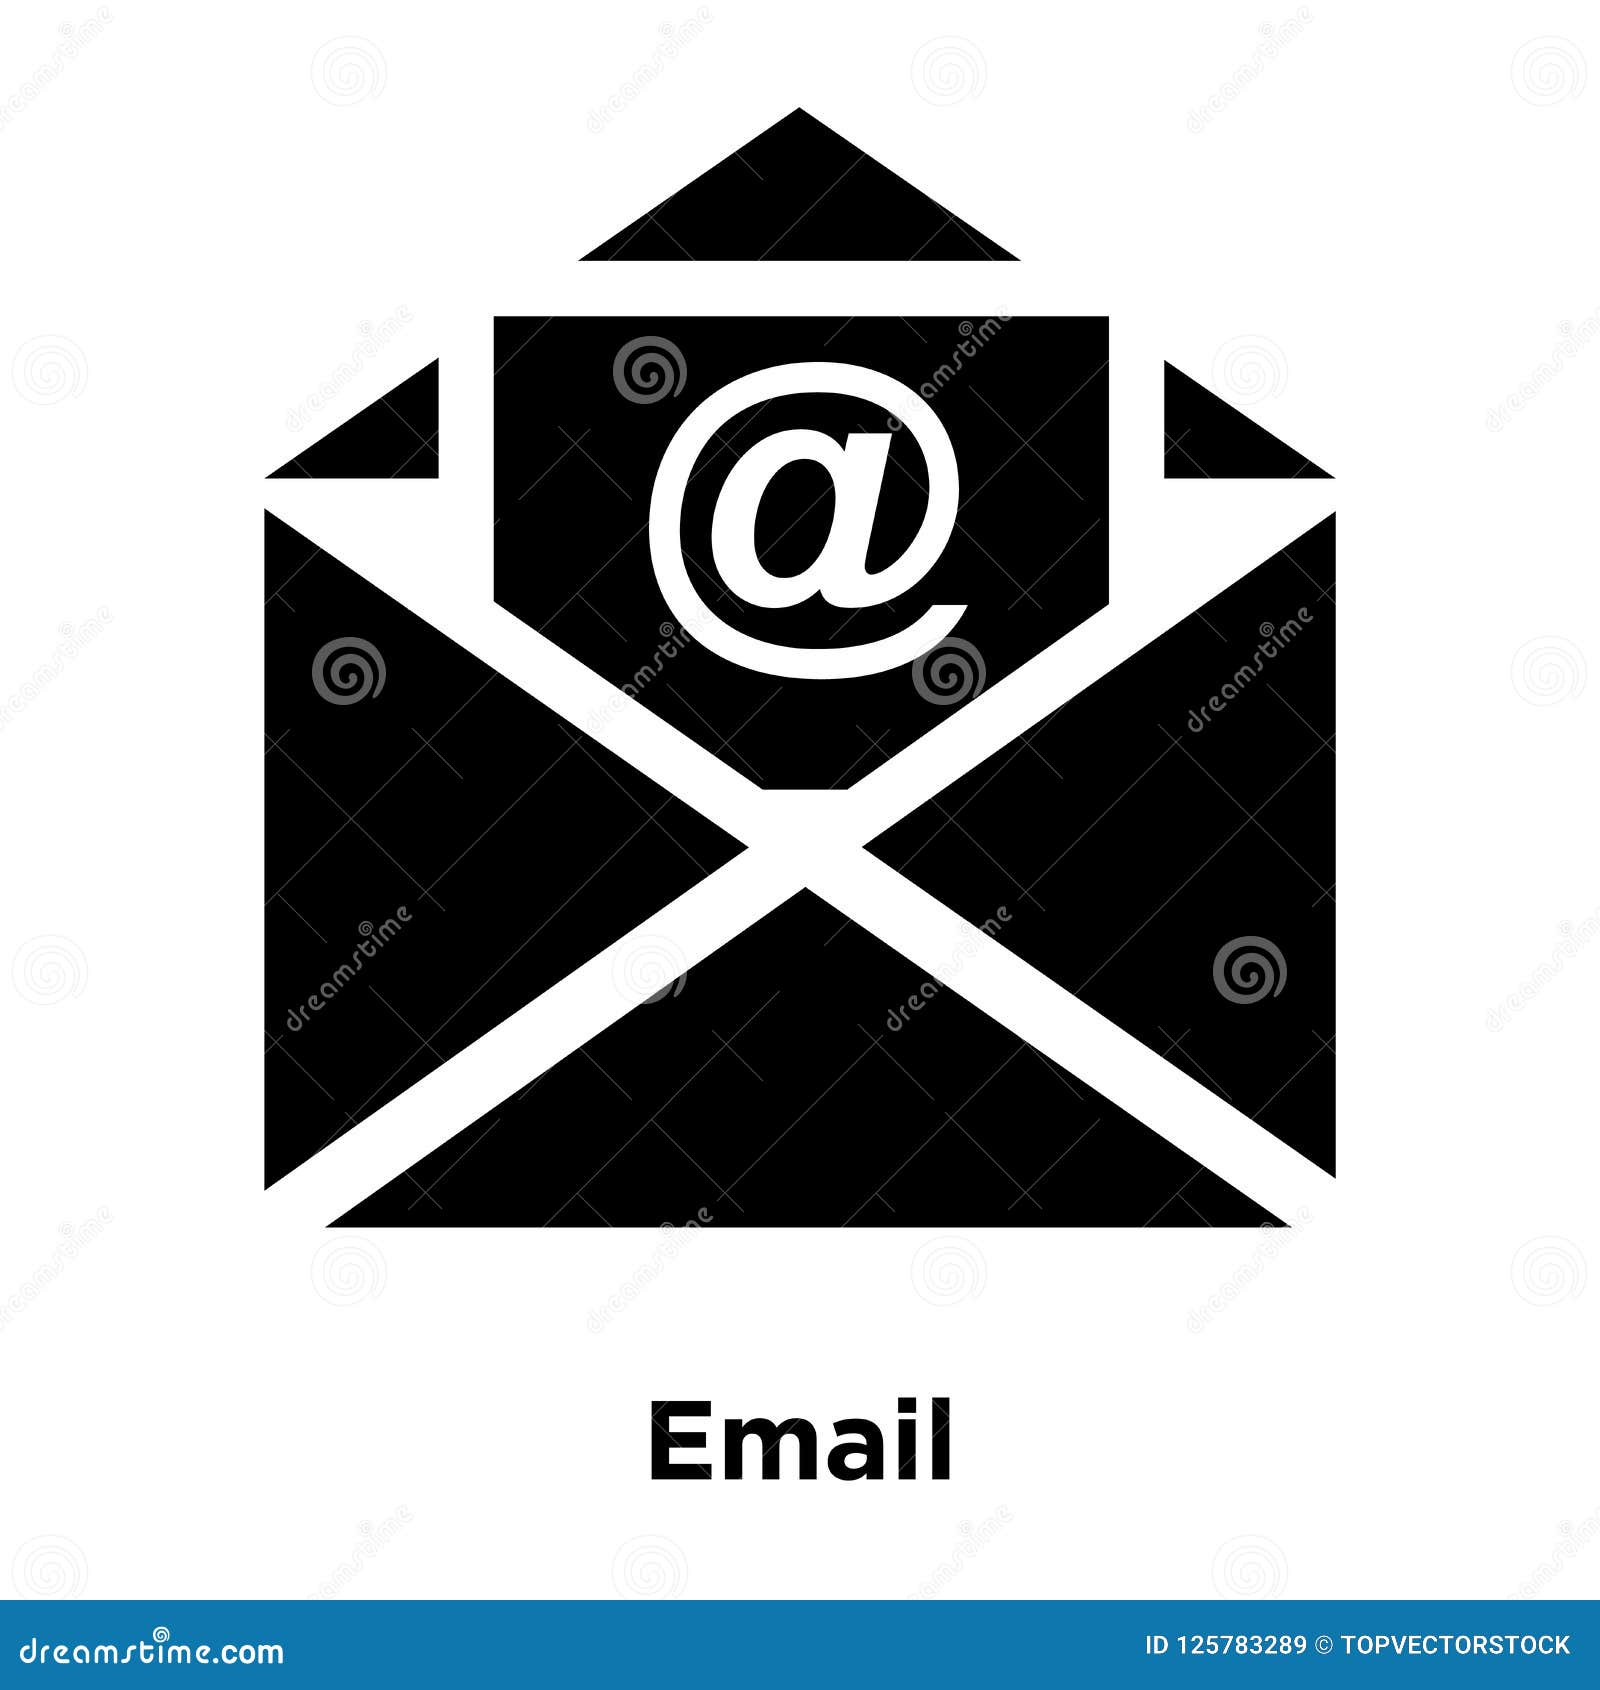 Nhấn vào và khám phá những điều mới mẻ mà biểu tượng email trên nền trắng có thể mang đến cho bạn. Đây là lựa chọn hoàn hảo để thể hiện sự chuyên nghiệp và sáng tạo.